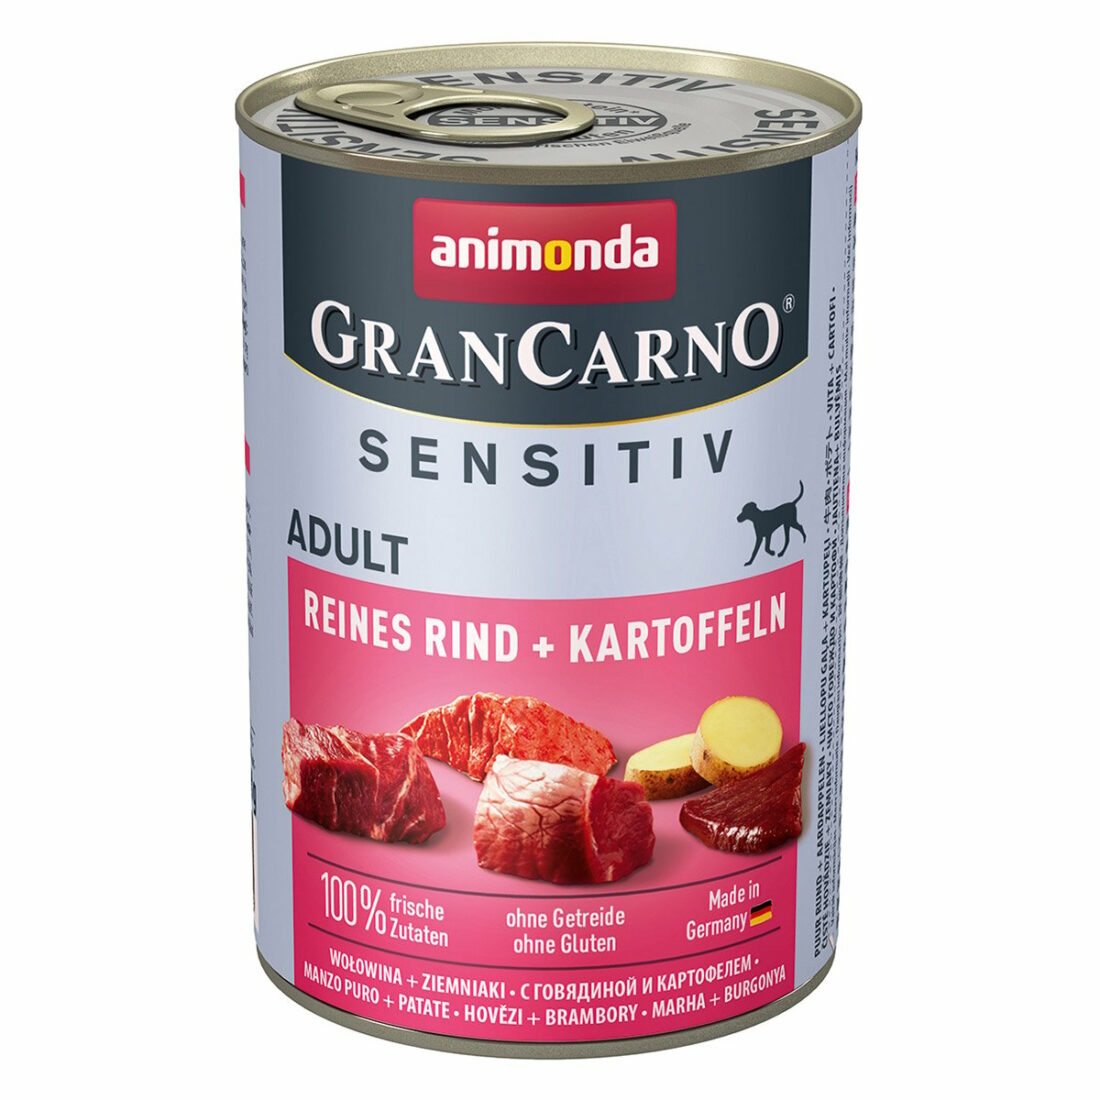 Animonda GranCarno Sensitiv čisté hovězí maso